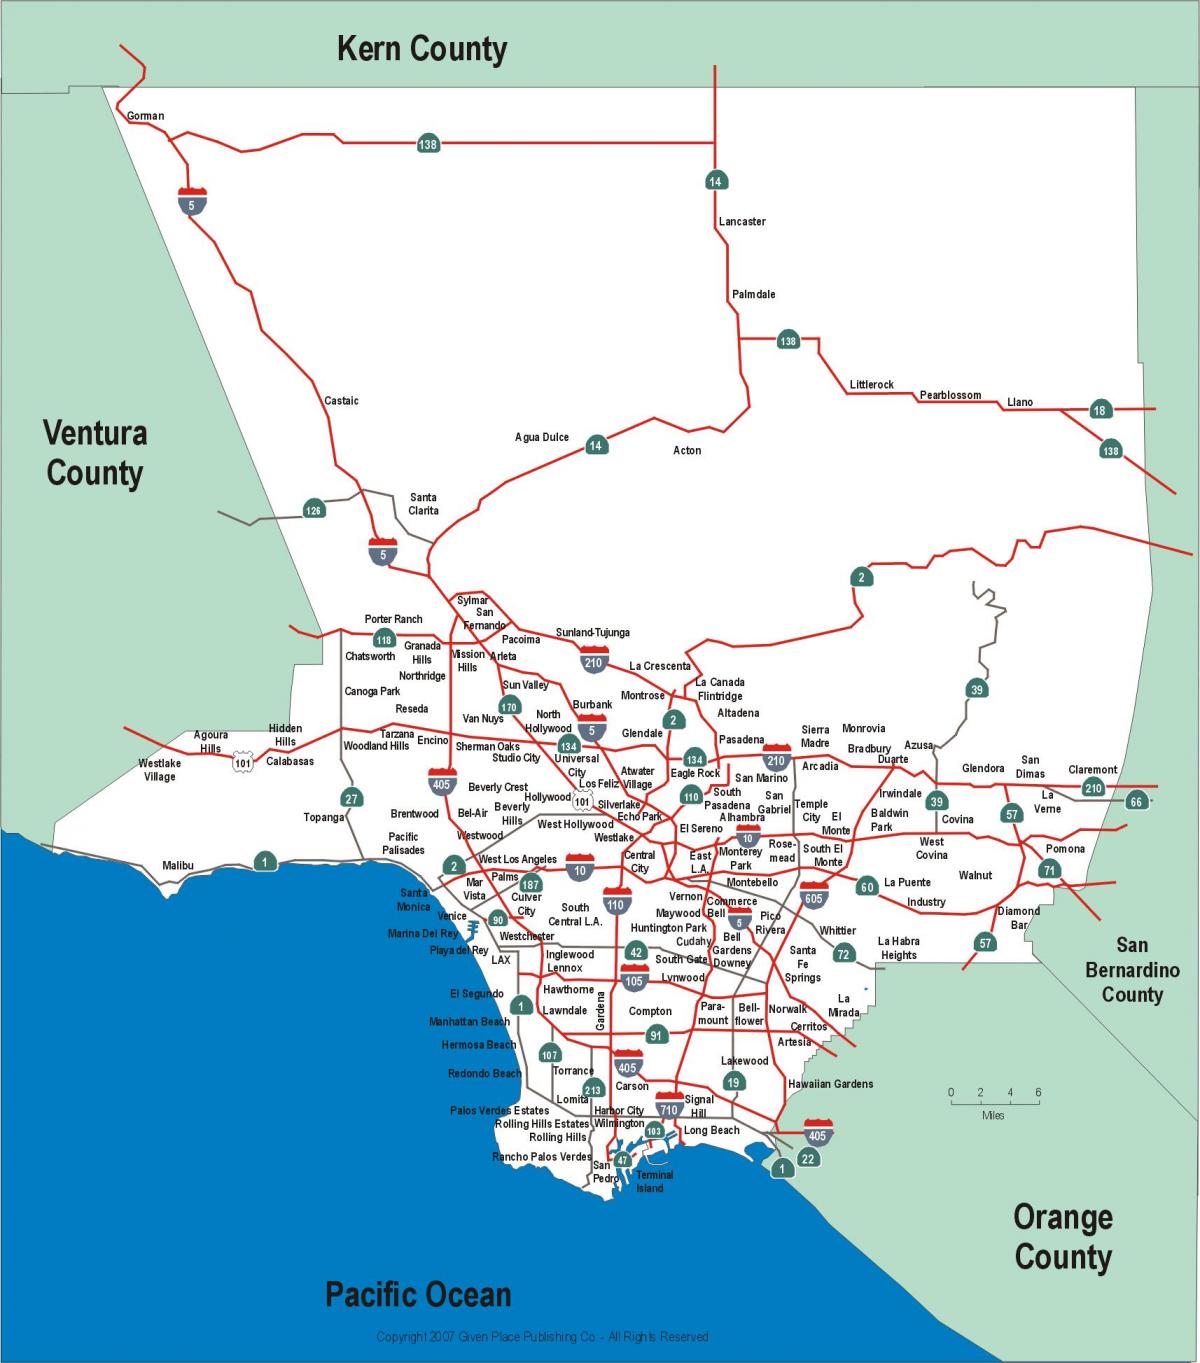 Лос-Анджелес магистралей карте